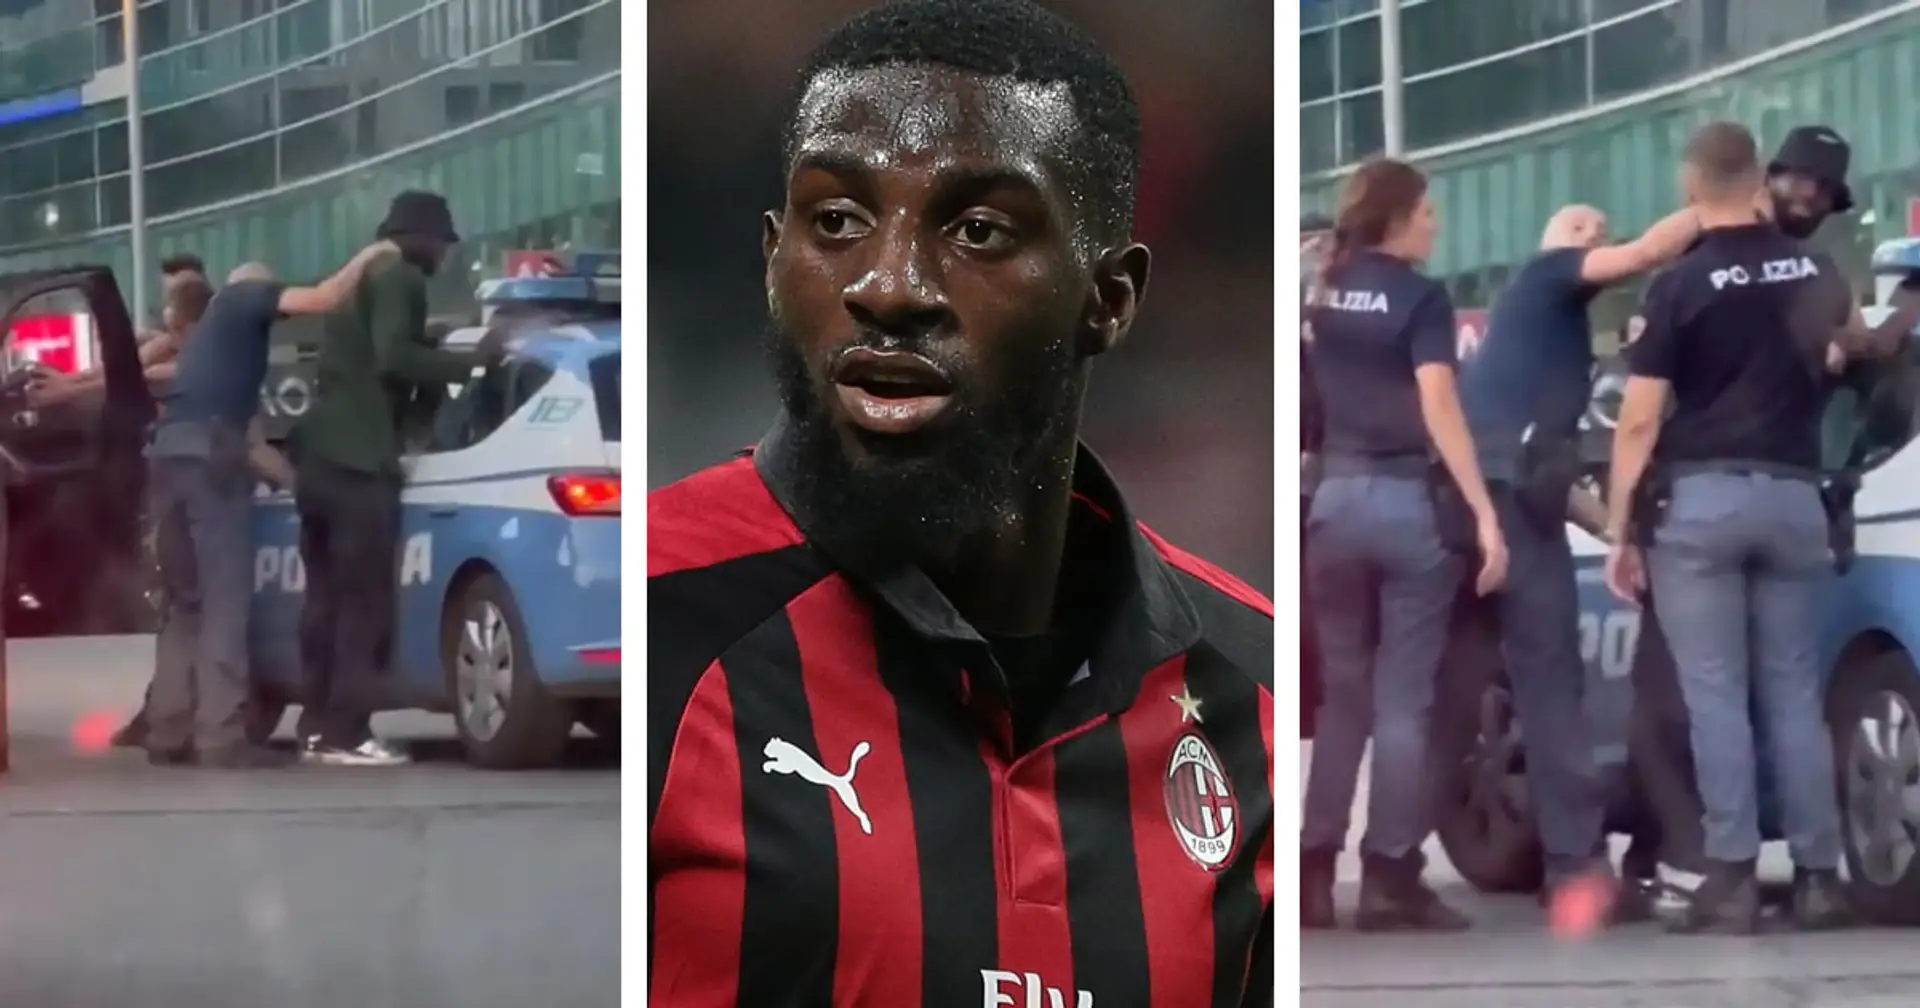 AC Milan midfielder Bakayoko wrongfully arrested by Italian police in case of mistaken identity